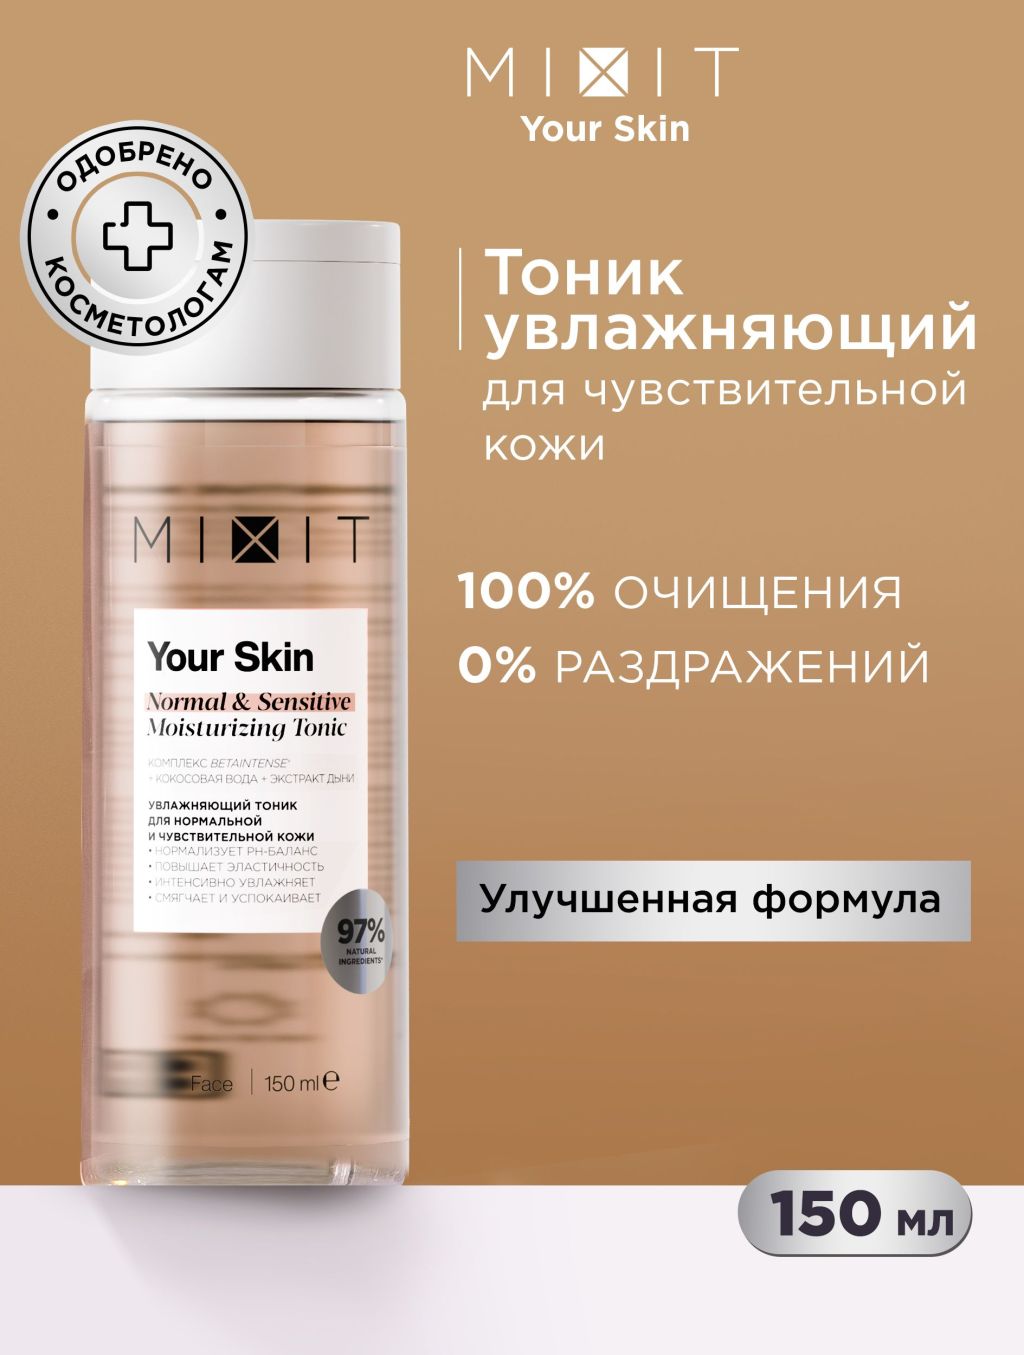 Тоник для лица MIXIT Your Skin увлажняющий, для нормальной и чувствительной кожи, 150 мл mixit увлажняющий крем для кожи вокруг глаз с лифтинг эффектом